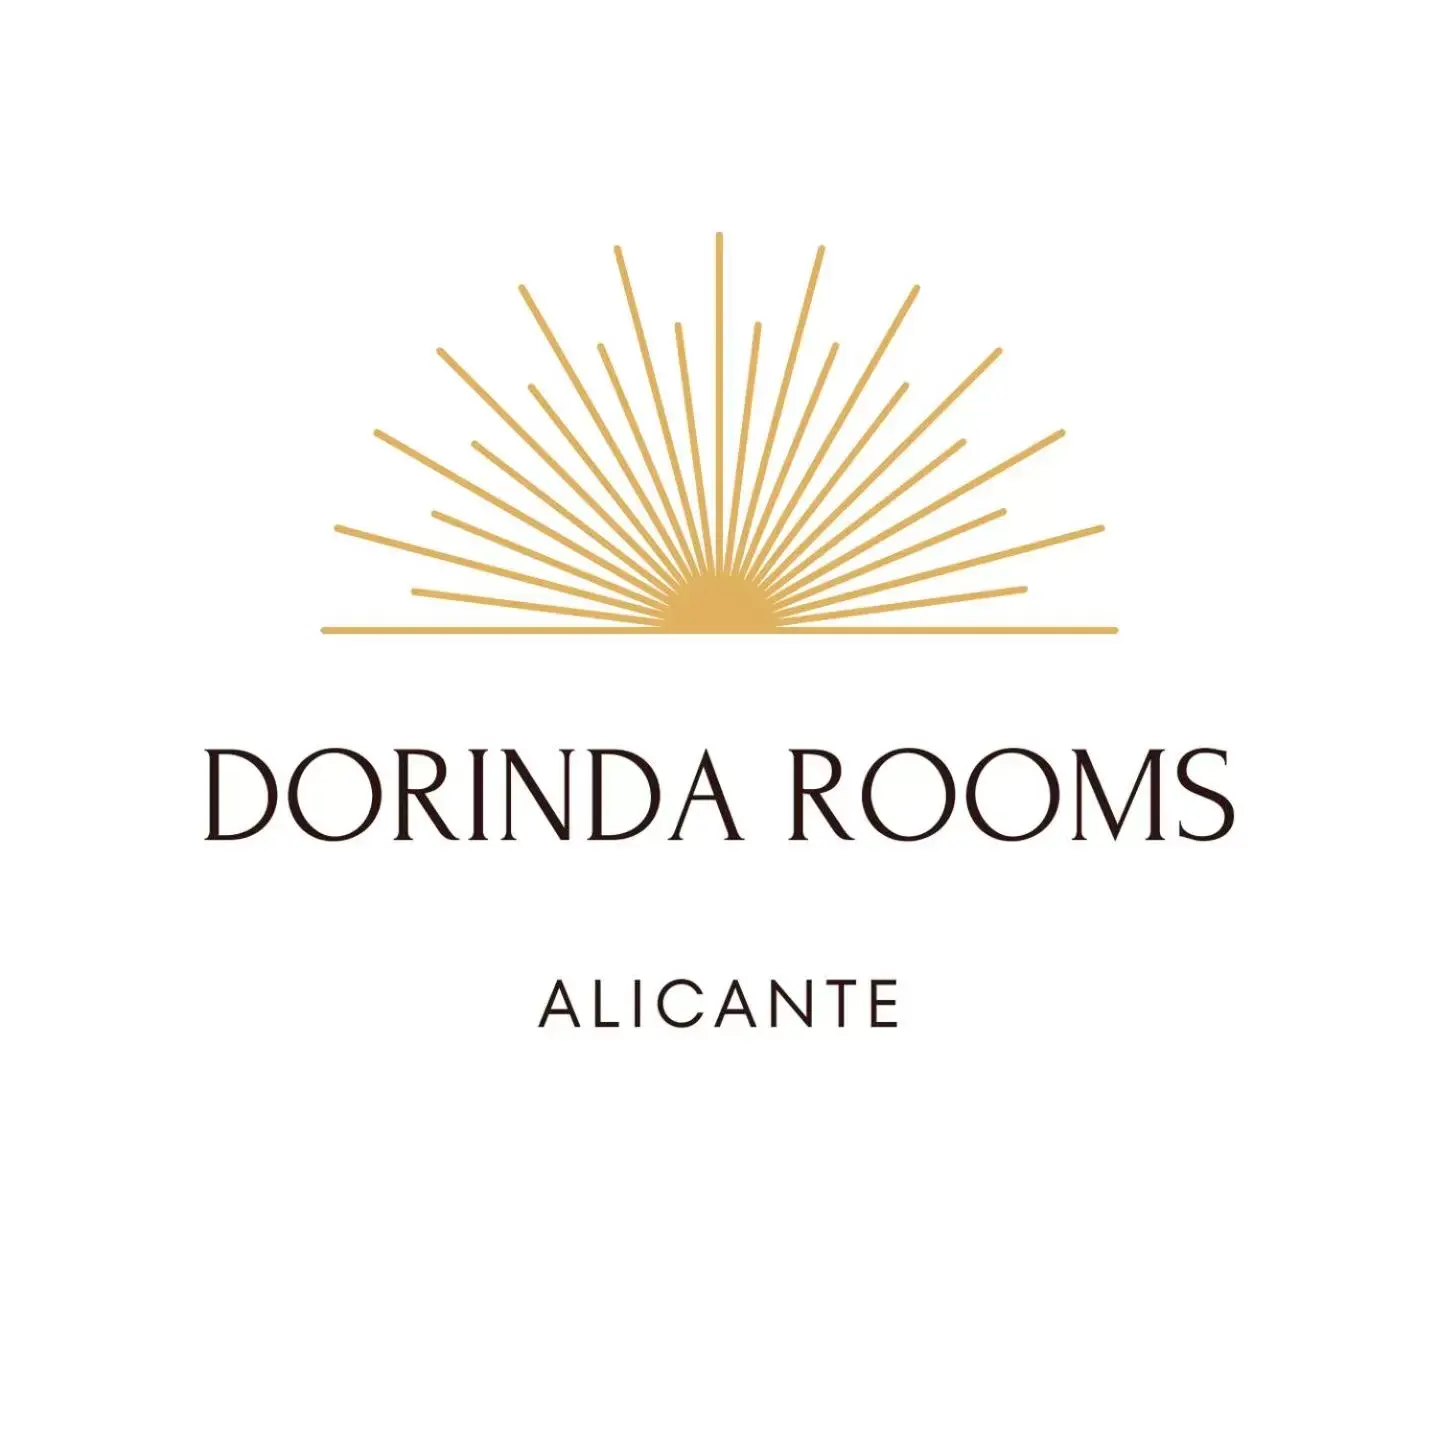 Property logo or sign, Property Logo/Sign in Dorinda Rooms